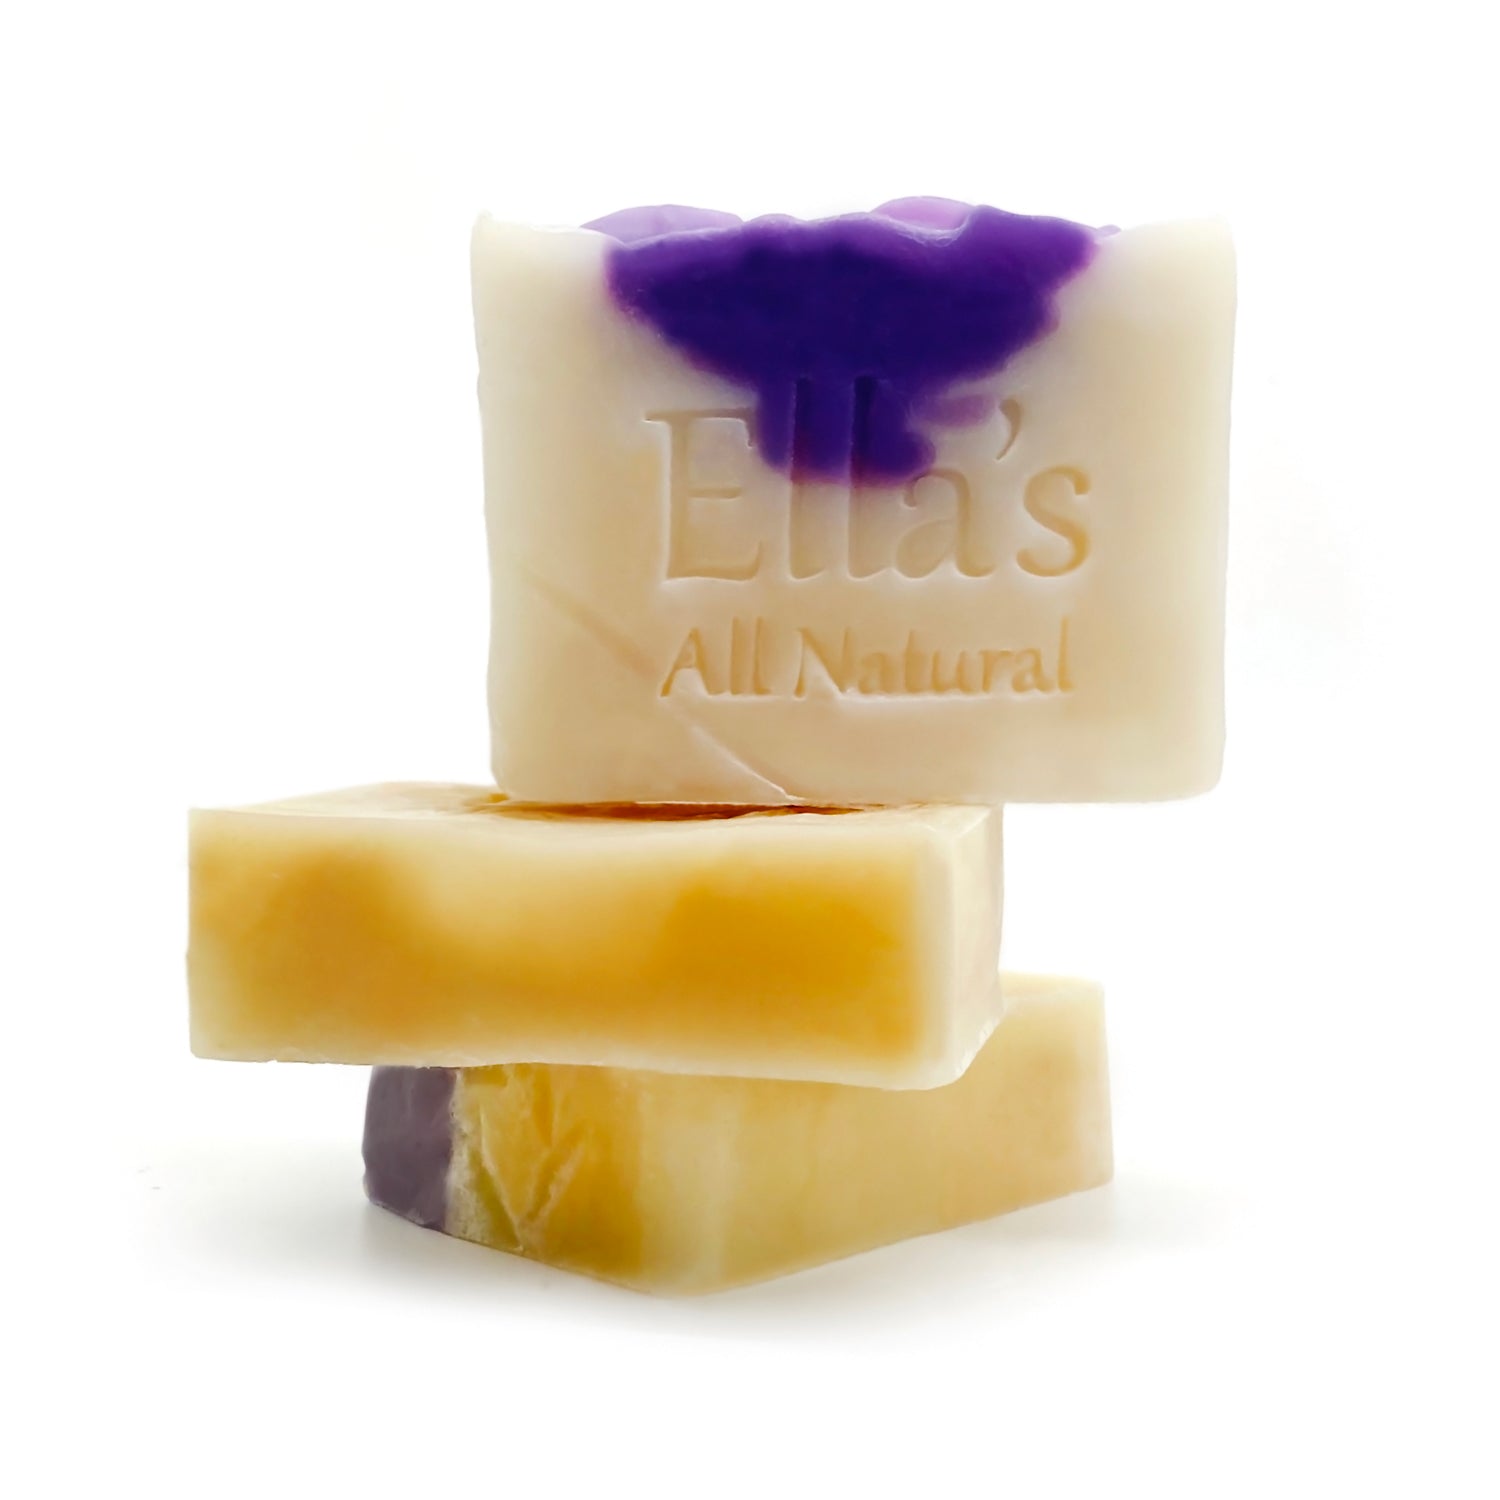 Ella's All Natural Soap Bar - 150g